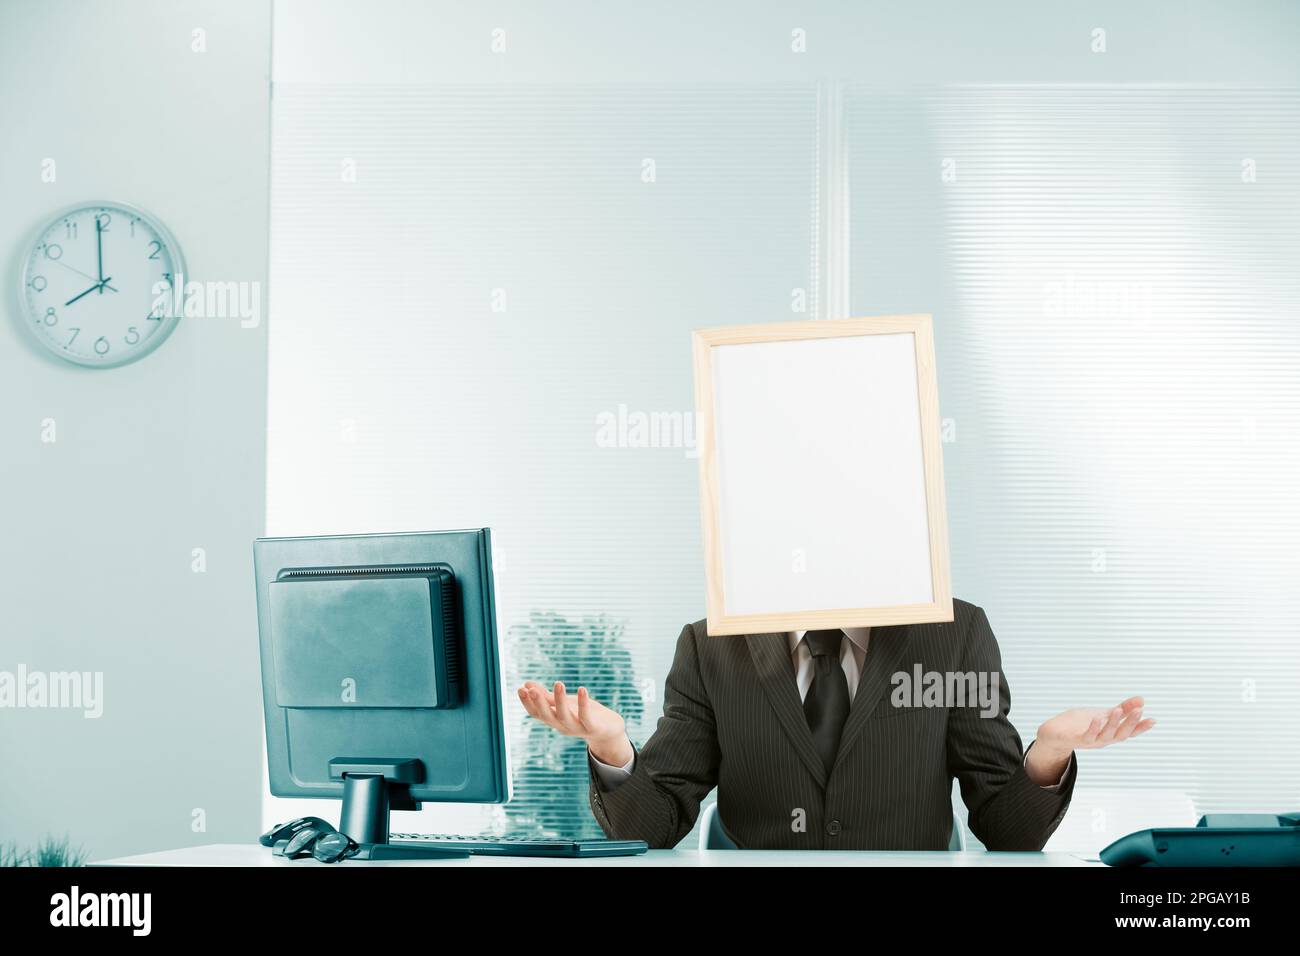 Hilflosigkeit, keine Hilfe, Stase, Bürokratie, abwarten und sehen, Behinderung und Nützlichkeit, vermittelt von einem Mann in einem Büro mit einem Schild für einen Kopf und eine Postion Stockfoto